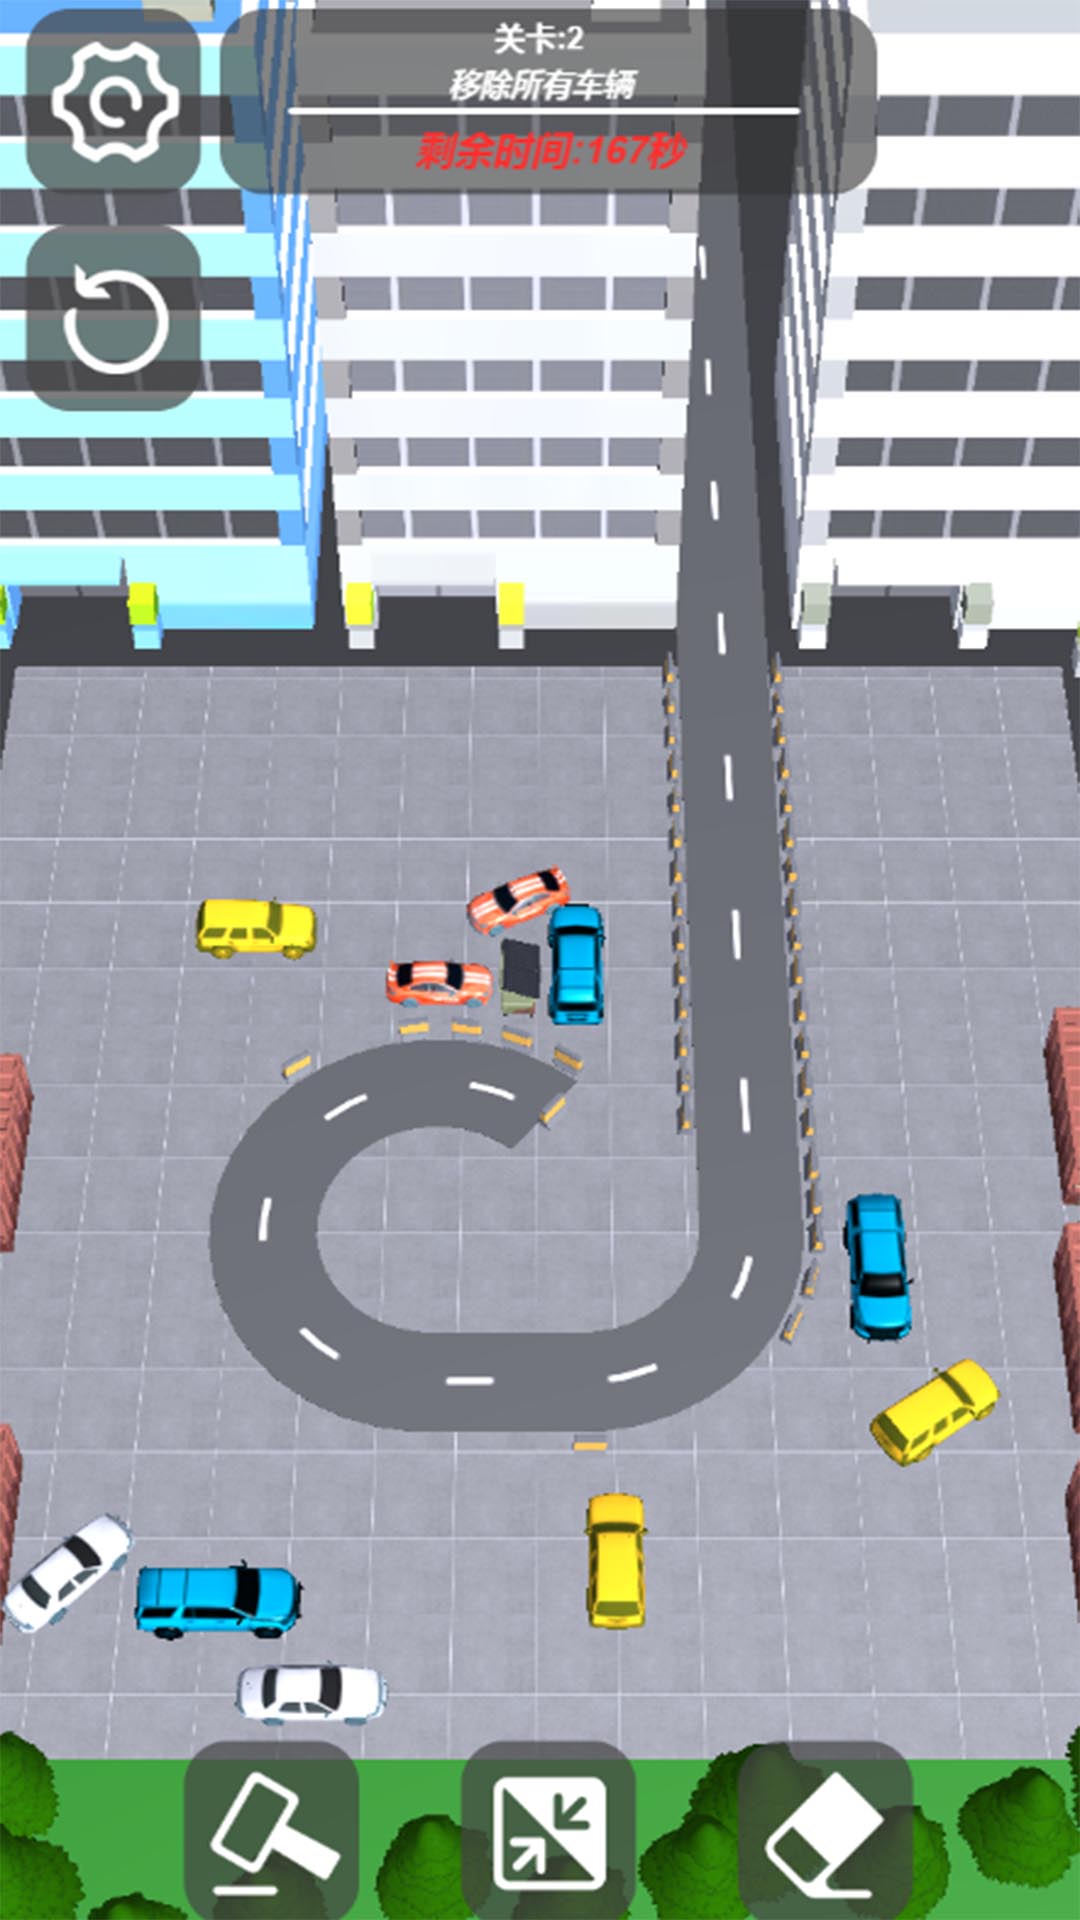 真实汽车模拟驾驶游戏官方版截图2: